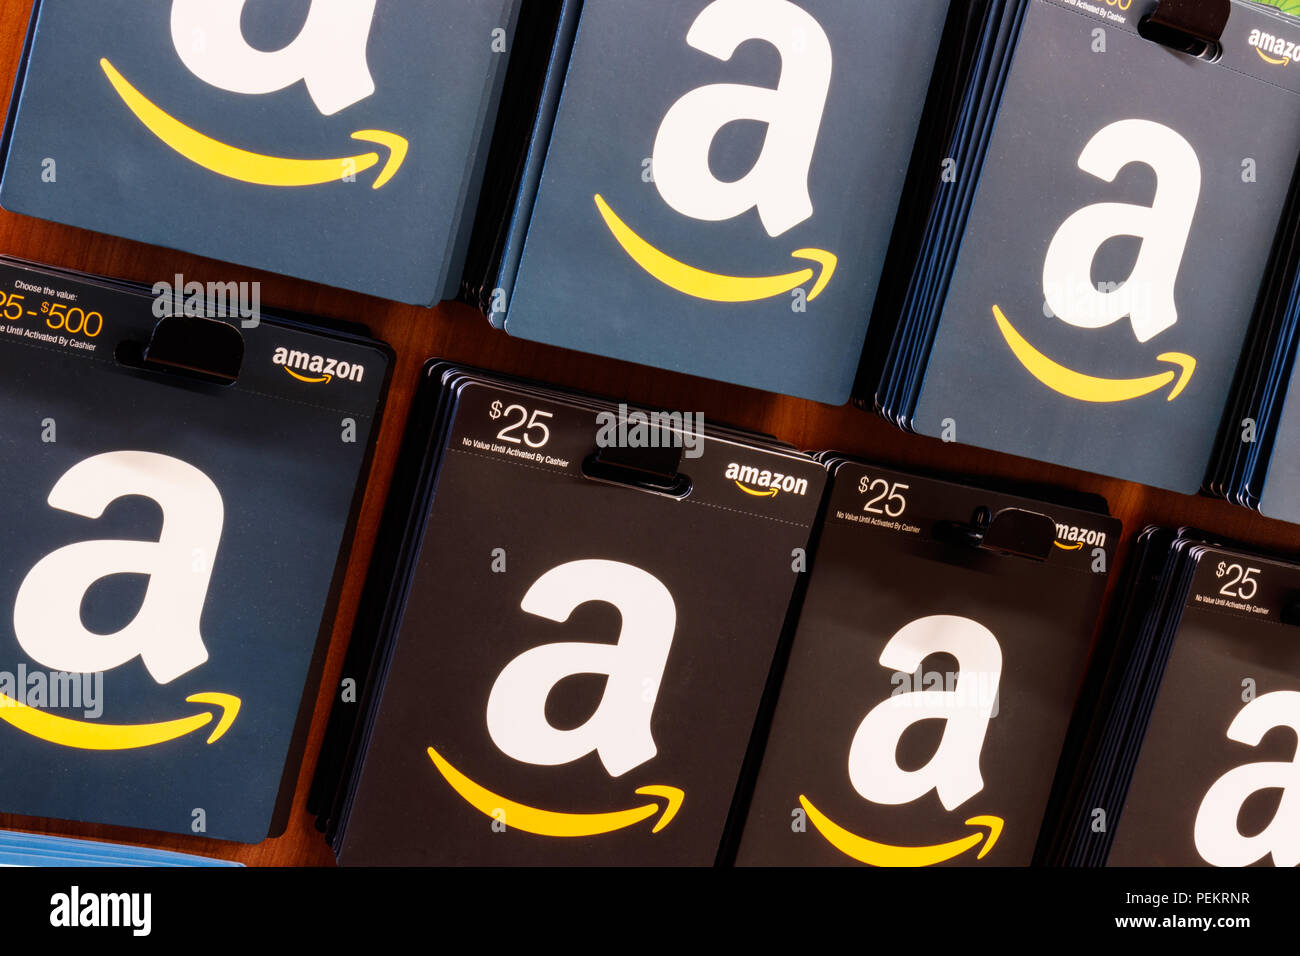 Westfield - Circa Agosto 2018: Amazon carte regalo. Amazon.com ora possiede 1 miliardo di dollari che vale la pena di altre società X Foto Stock